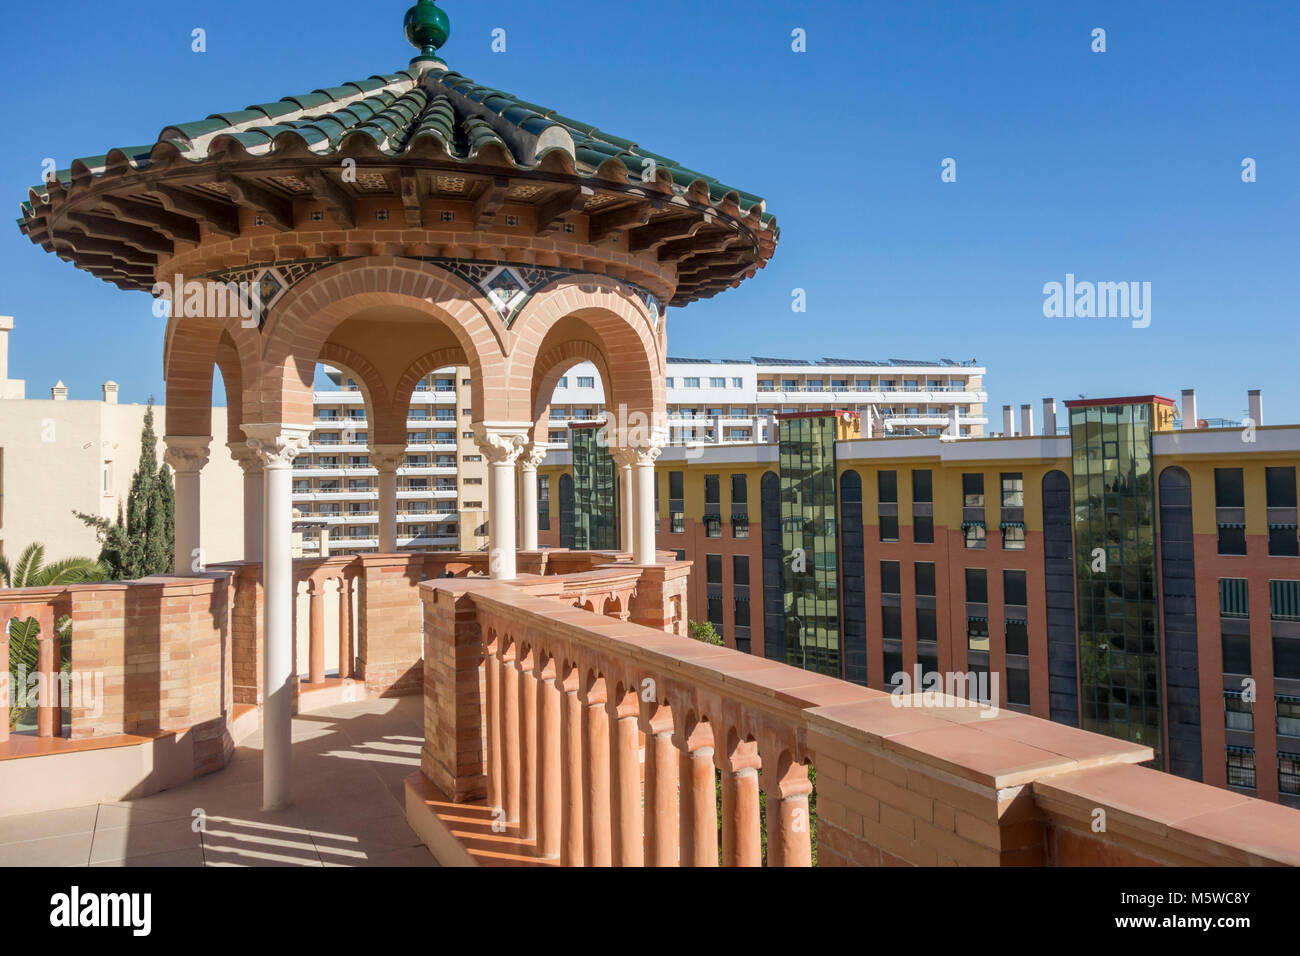 Monument de l'Architecture, bâtiment, maison, casa de los navajas,style néo-mudéjar à Torremolinos, Espagne. Banque D'Images